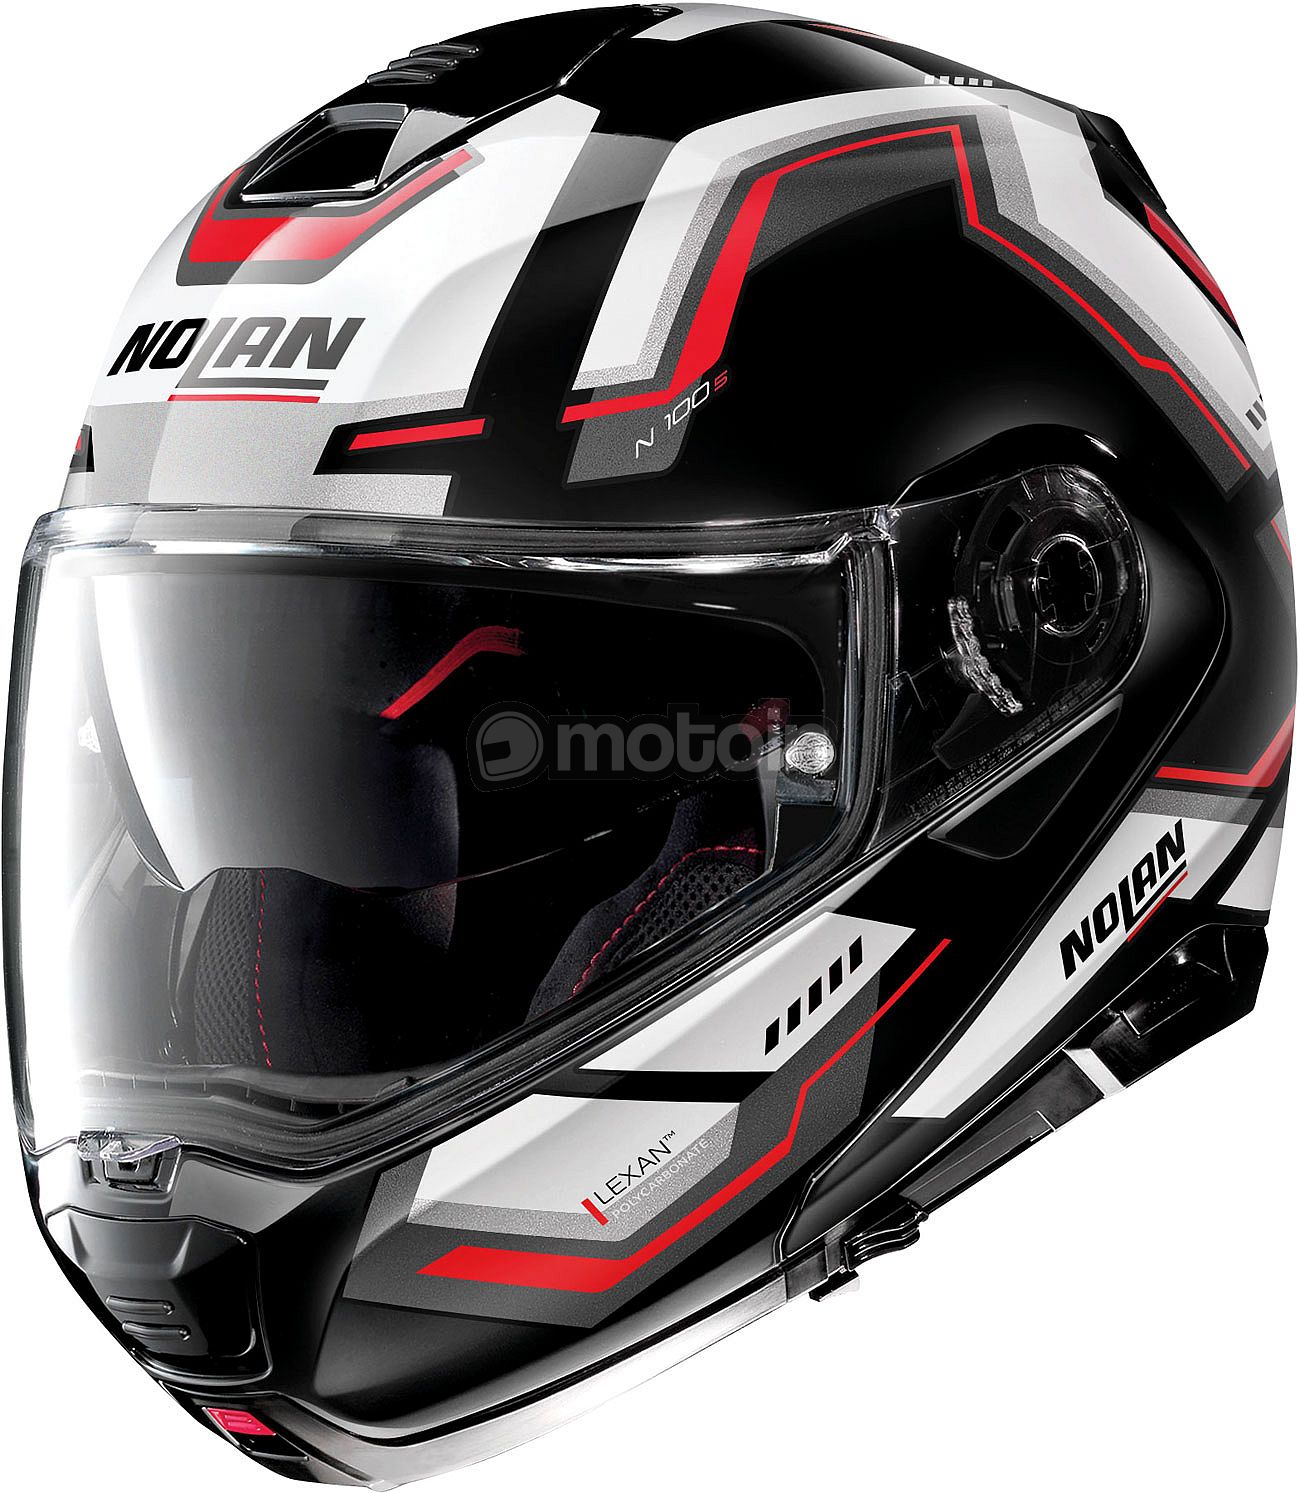 Nolan N100-5 N-Com Upwind, flip up helmet